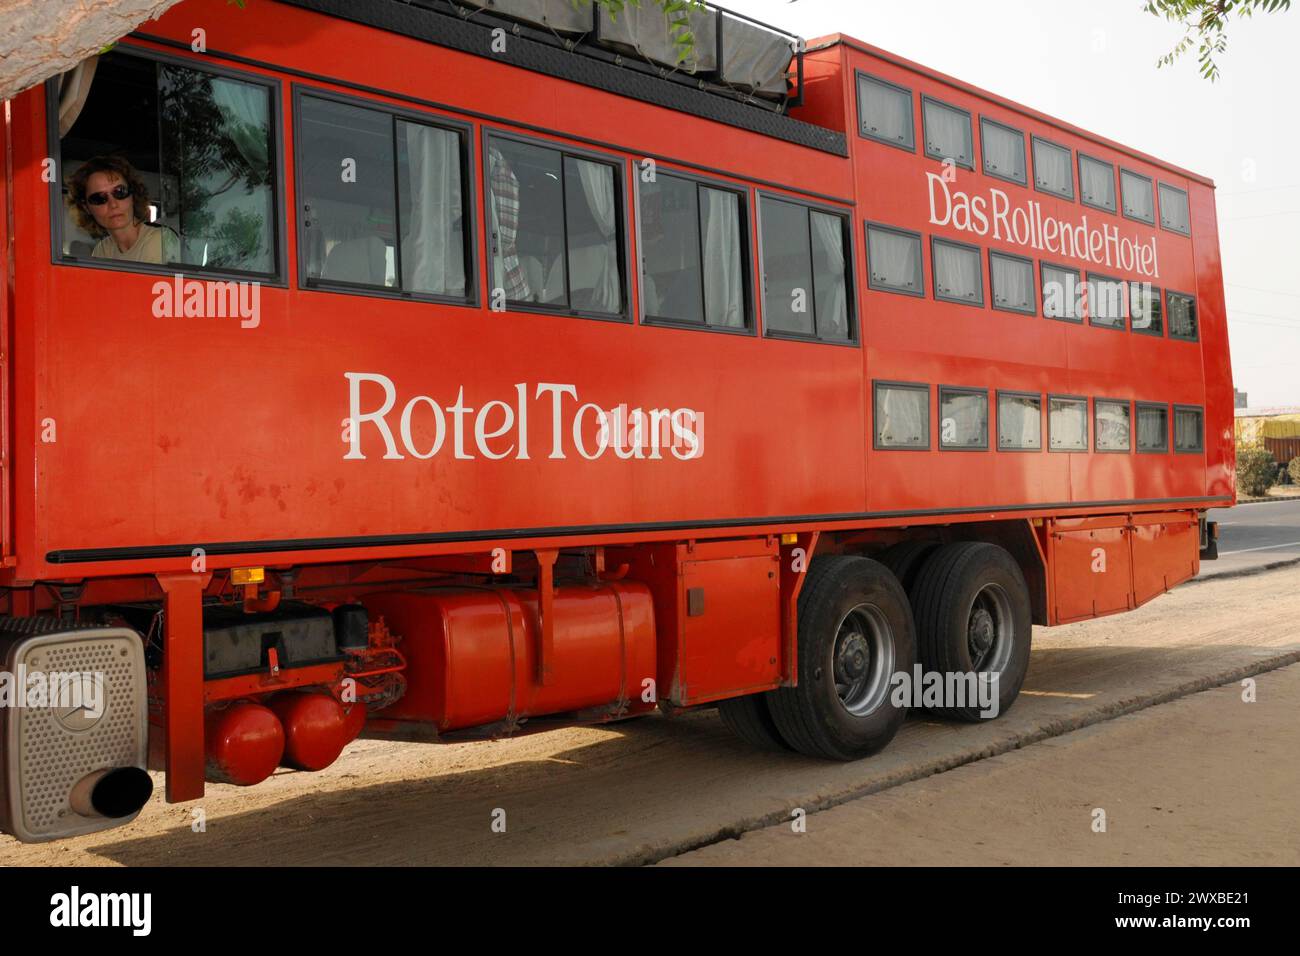 Una casa mobile rossa di Rotel Tours mostra un modo insolito di viaggiare e vivere, Rajasthan, India settentrionale, India Foto Stock